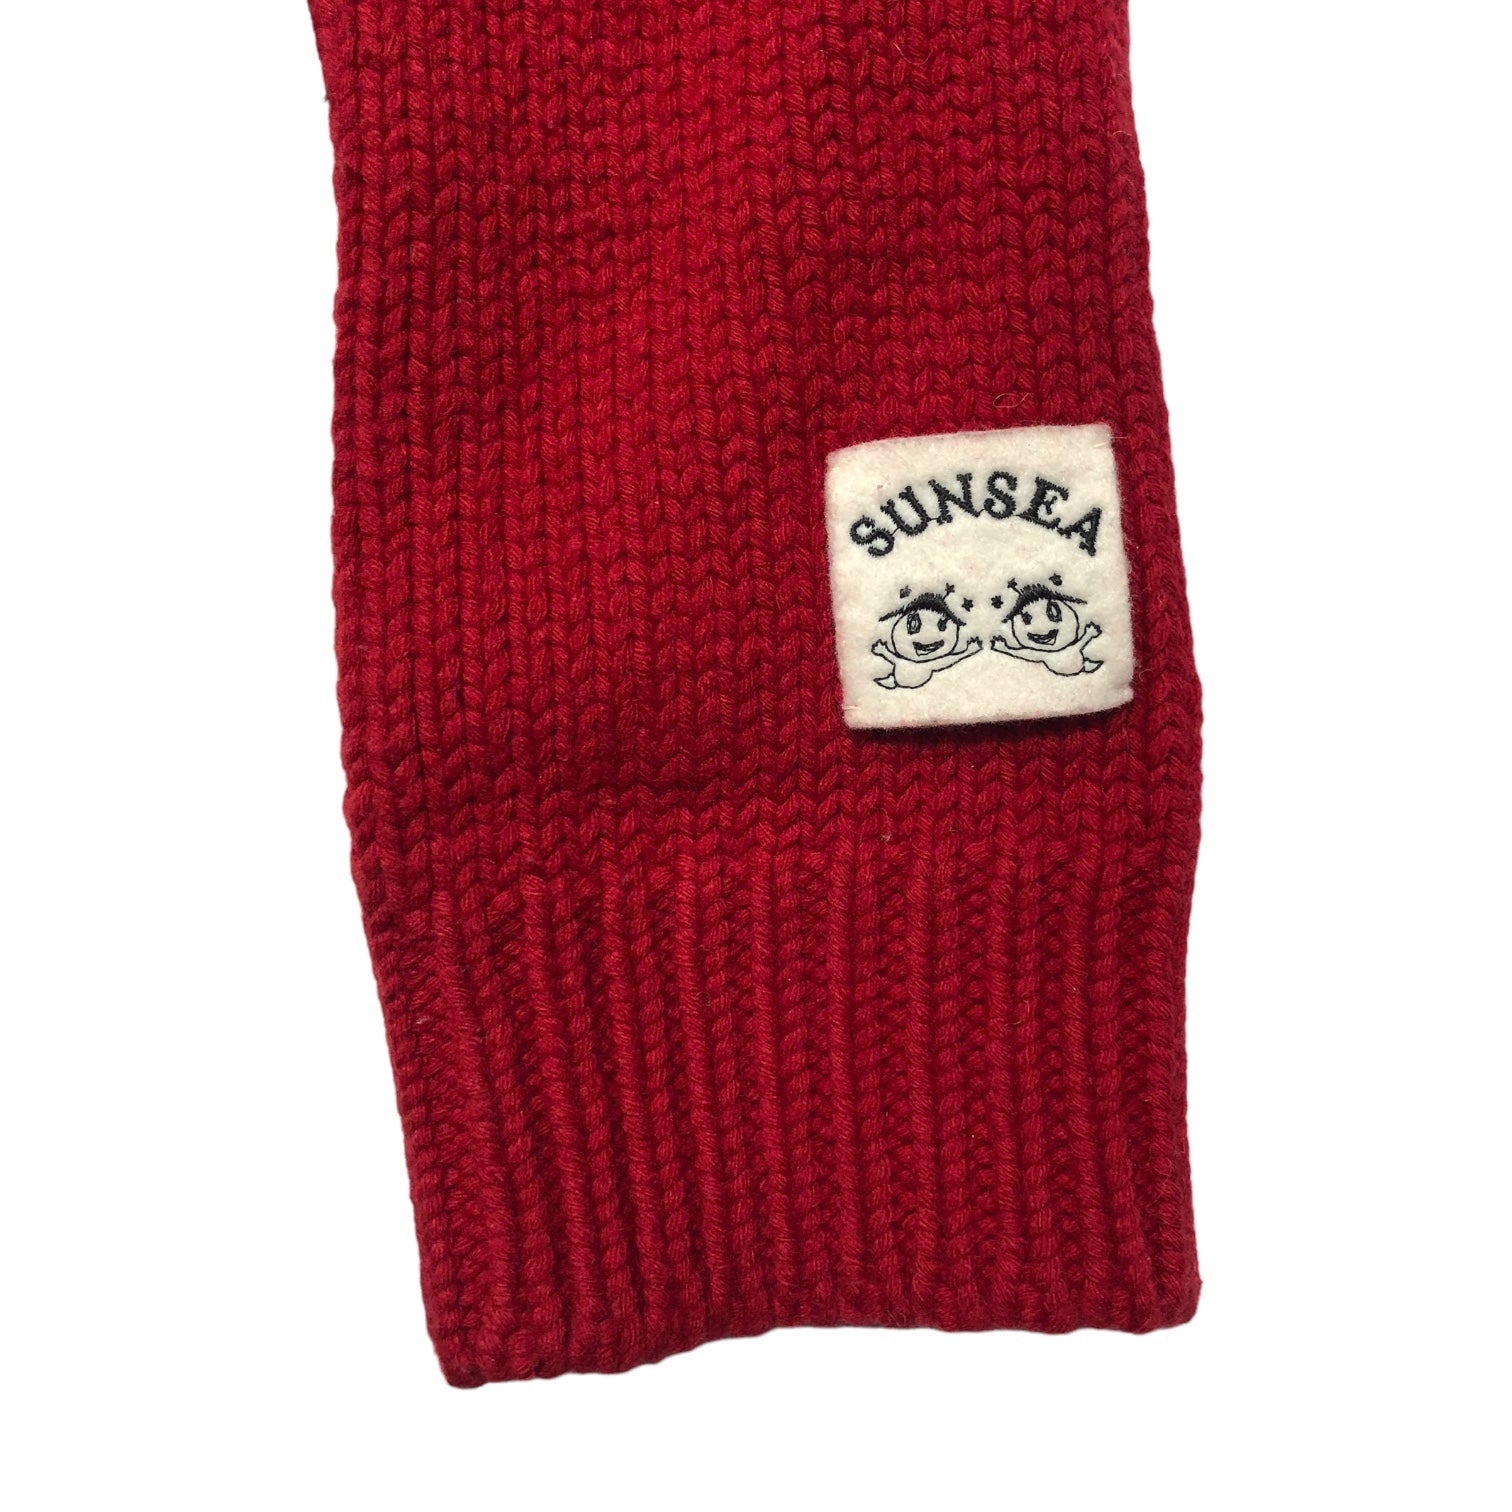 SUNSEA(サンシー) 17AW reversible knit cardigan リバーシブル ニット カーディガン - レッド